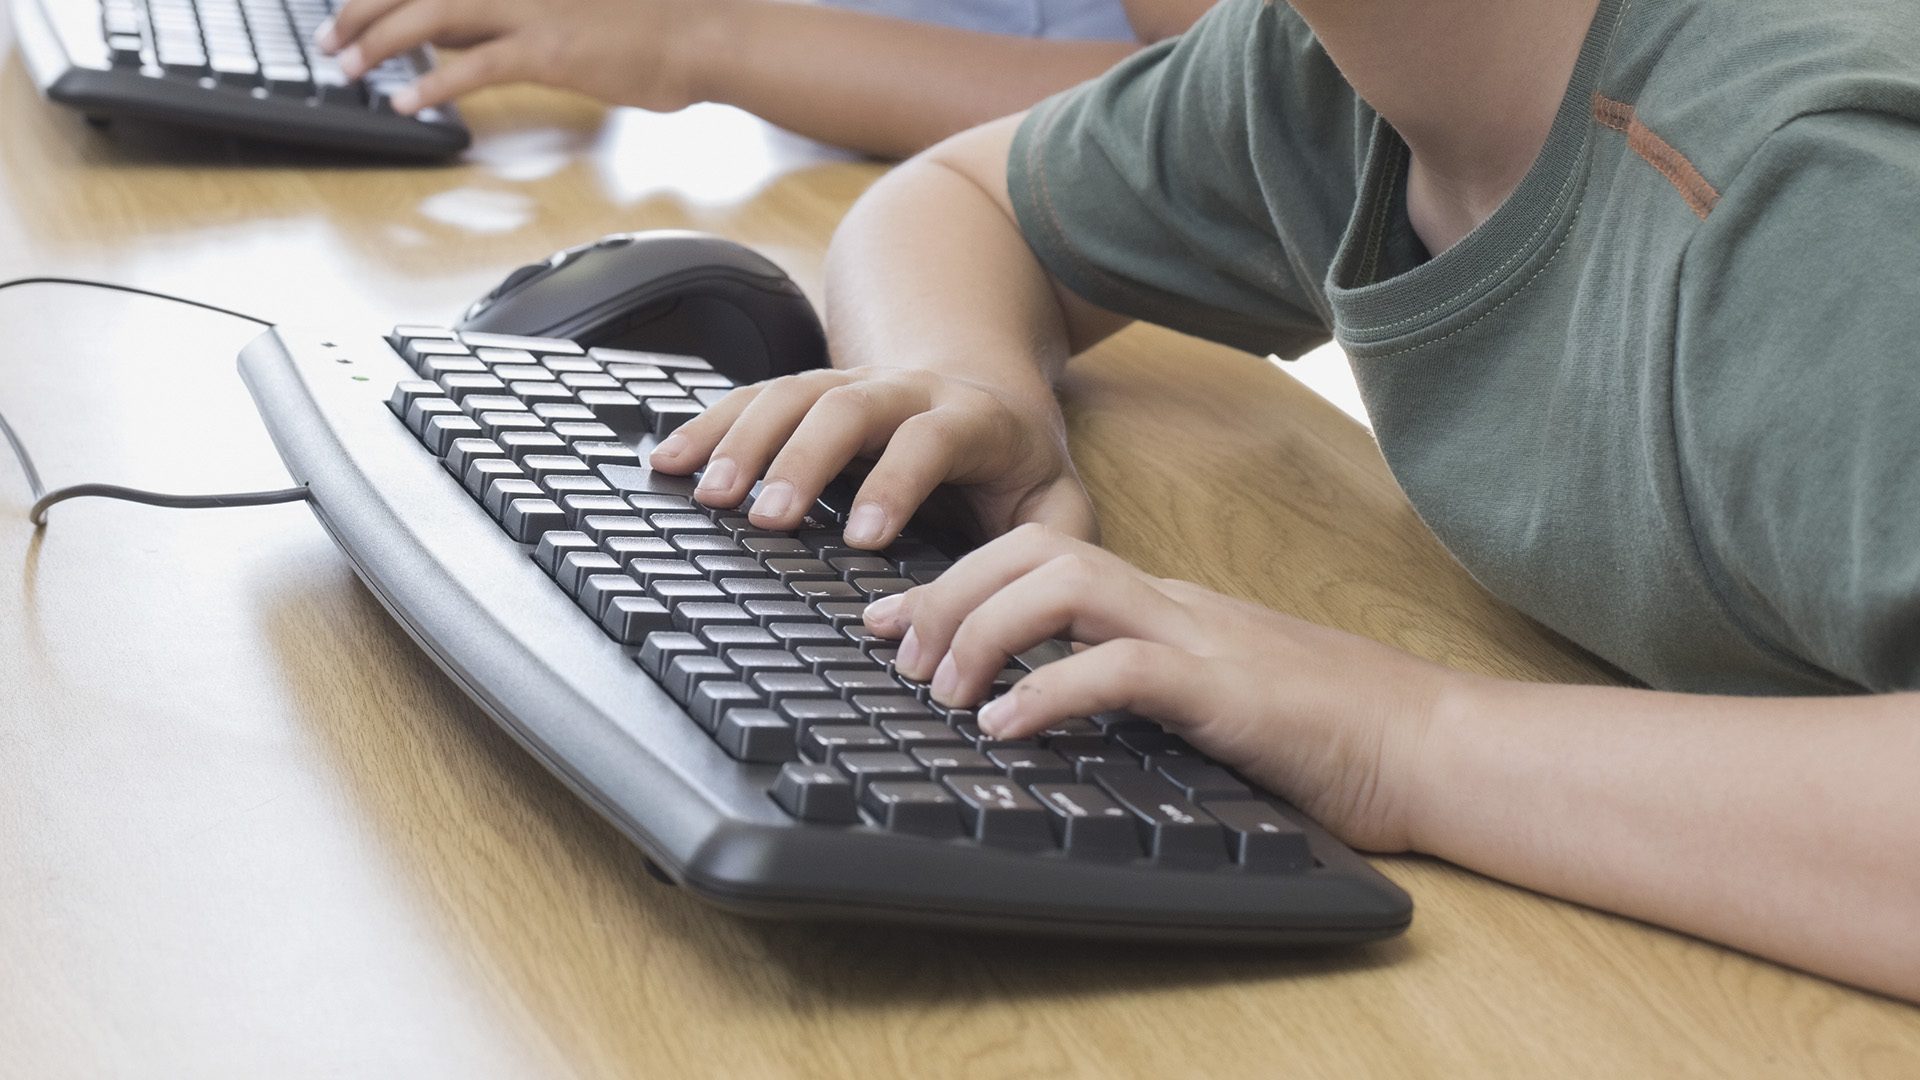 Barn der bruger en computer.